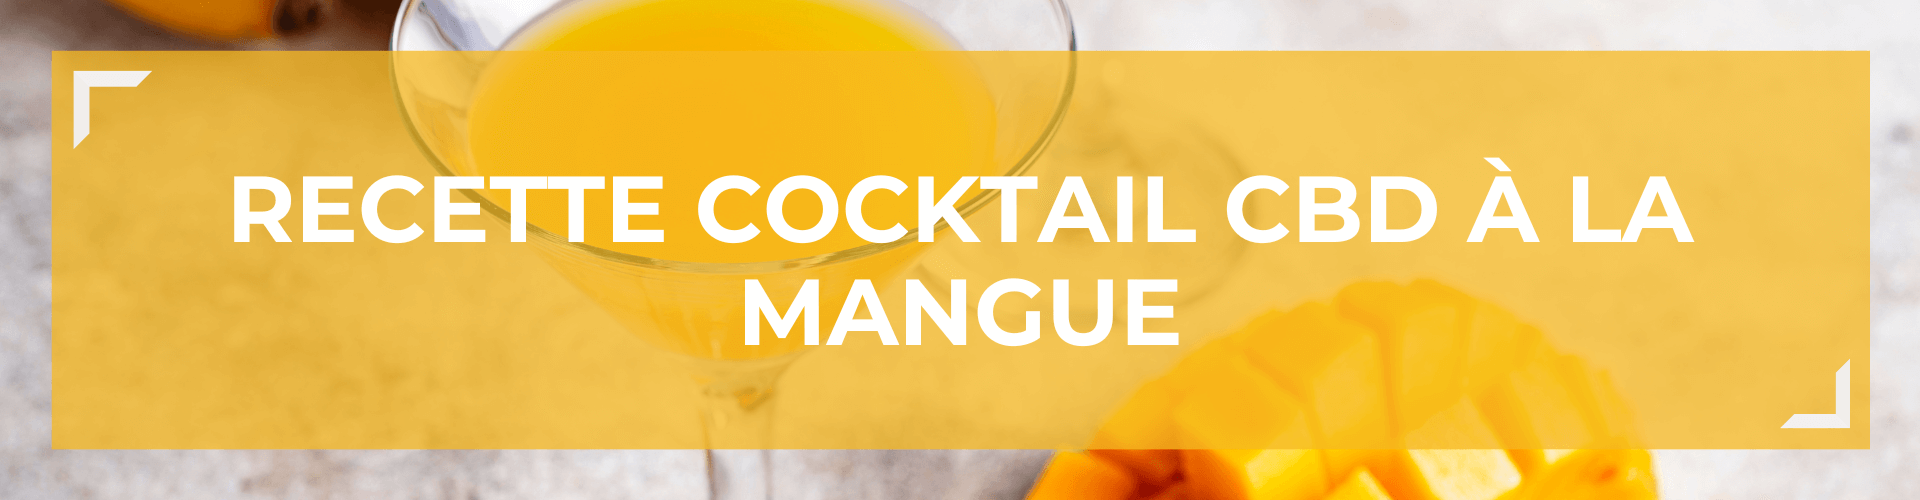 Recette Cocktail CBD Mangue